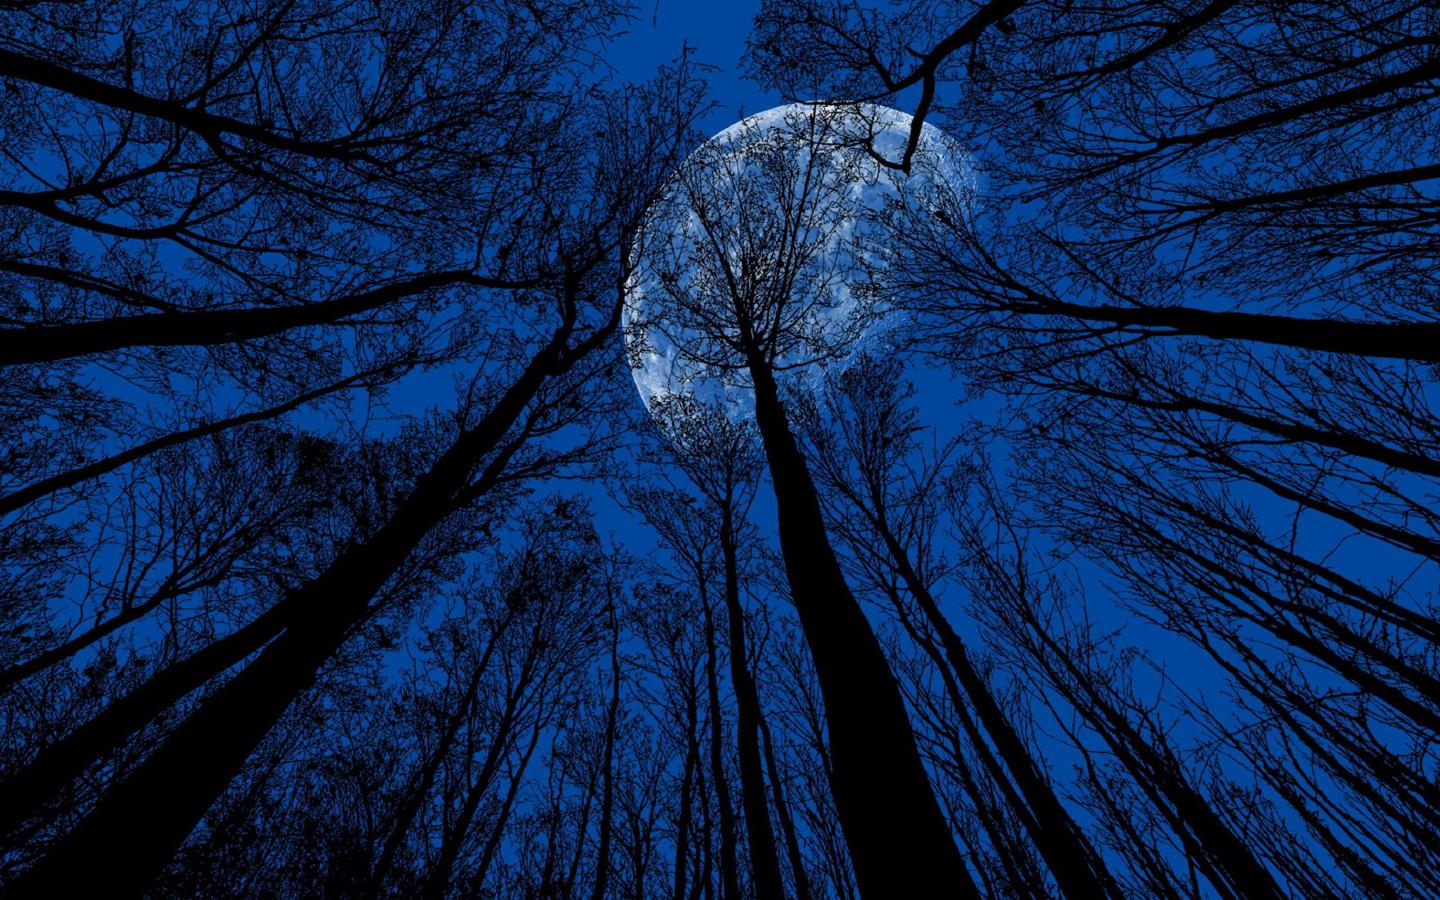 静谧的森林与夜空中皎洁明亮的月亮交相呼应